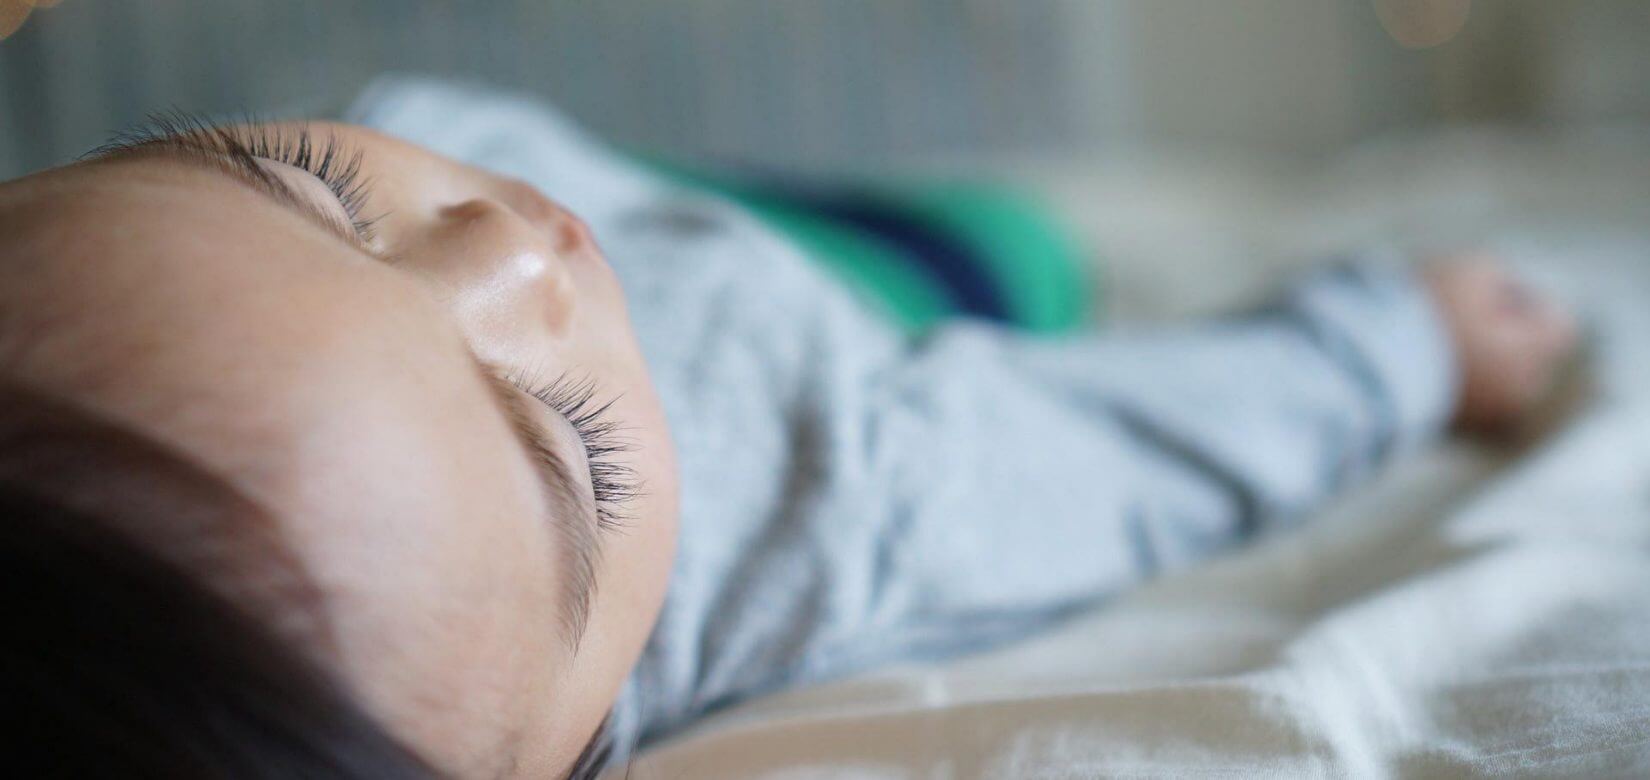 5 βήματα για να βοηθήσω το παιδί μου να κοιμηθεί όταν έχει βουλωμένη μύτη;